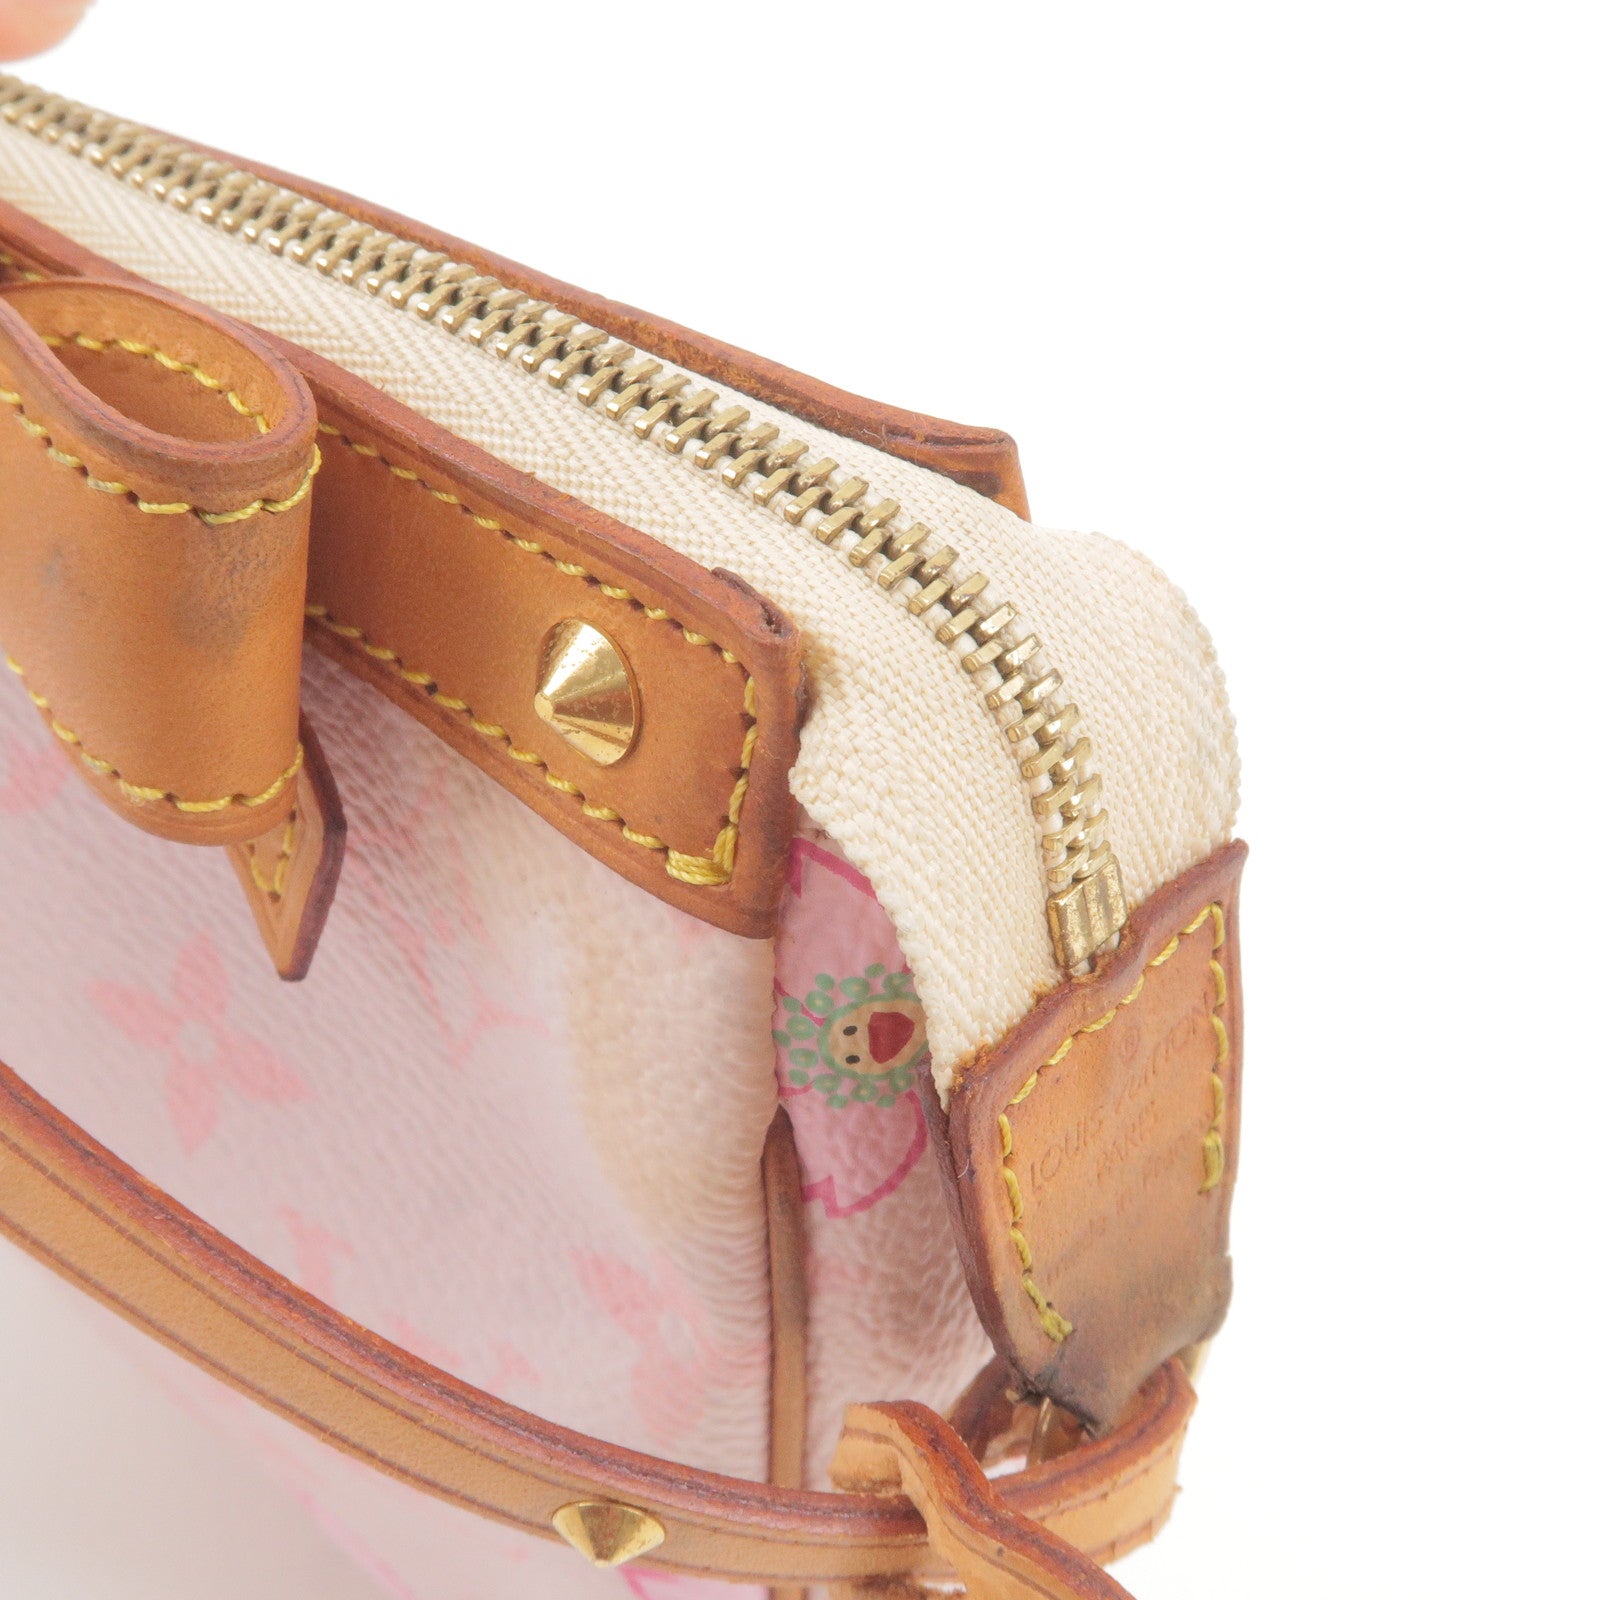 Louis - Accessoires - Louis Vuitton Damier Azur Neverfull Tote - Vuitton -  M92007 - Blossom - Cherry - Pochette - ep_vintage luxury Store - Pink – dct